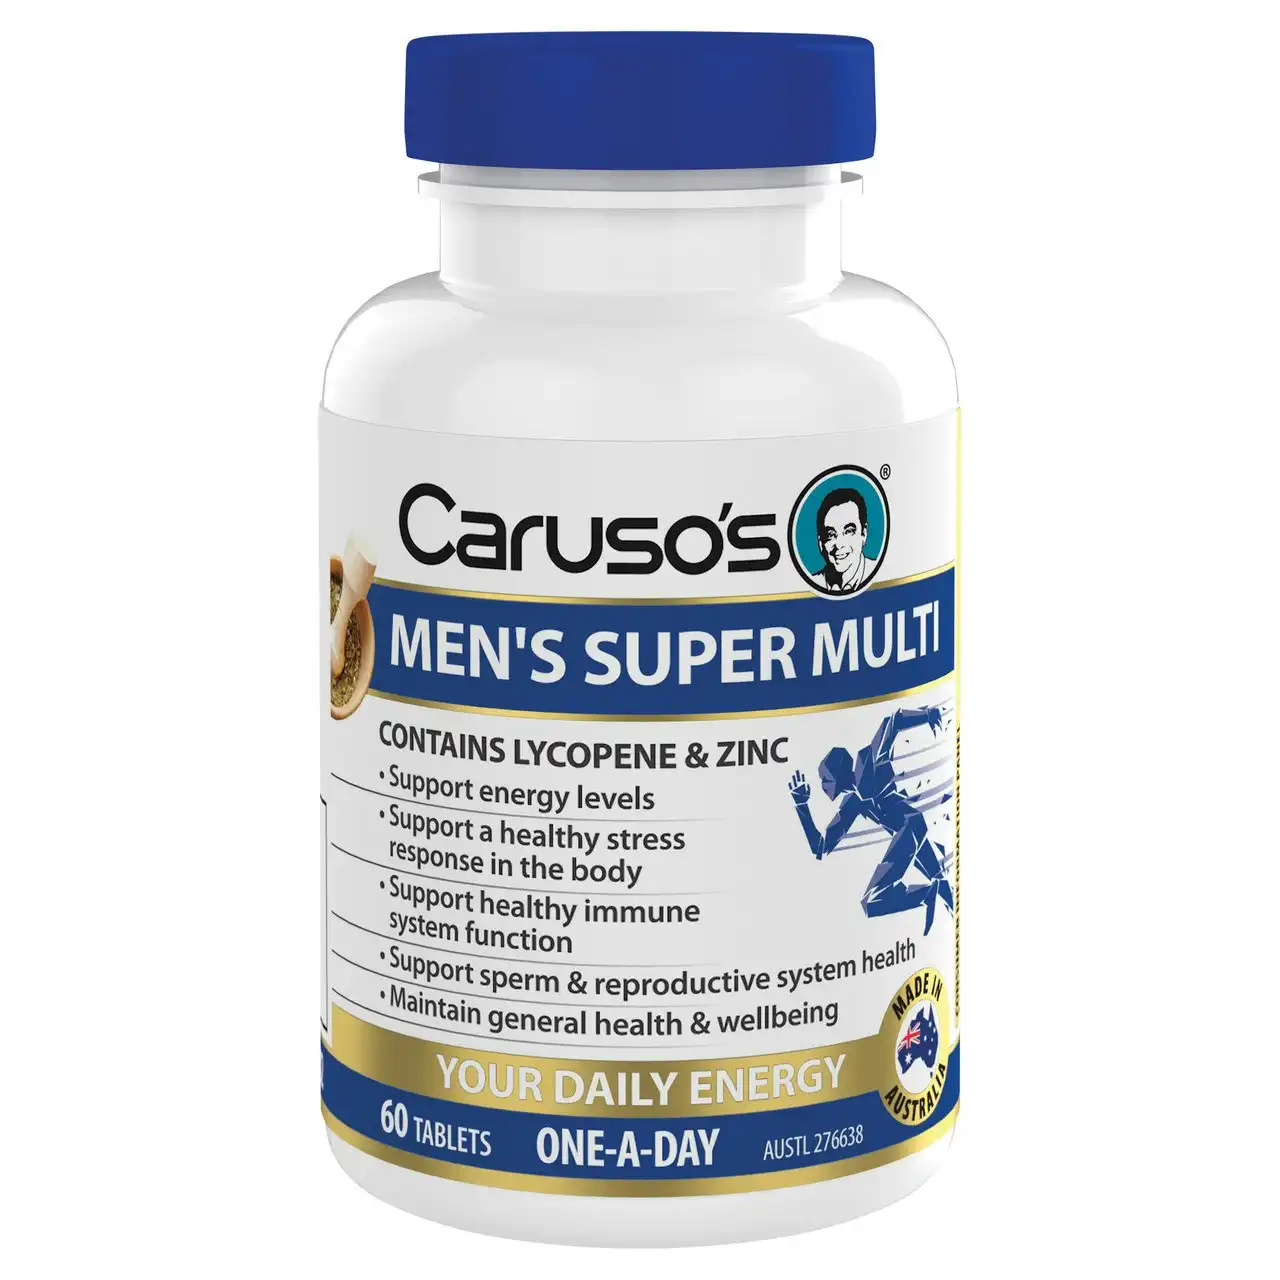 Caruso's Men's Super Multi